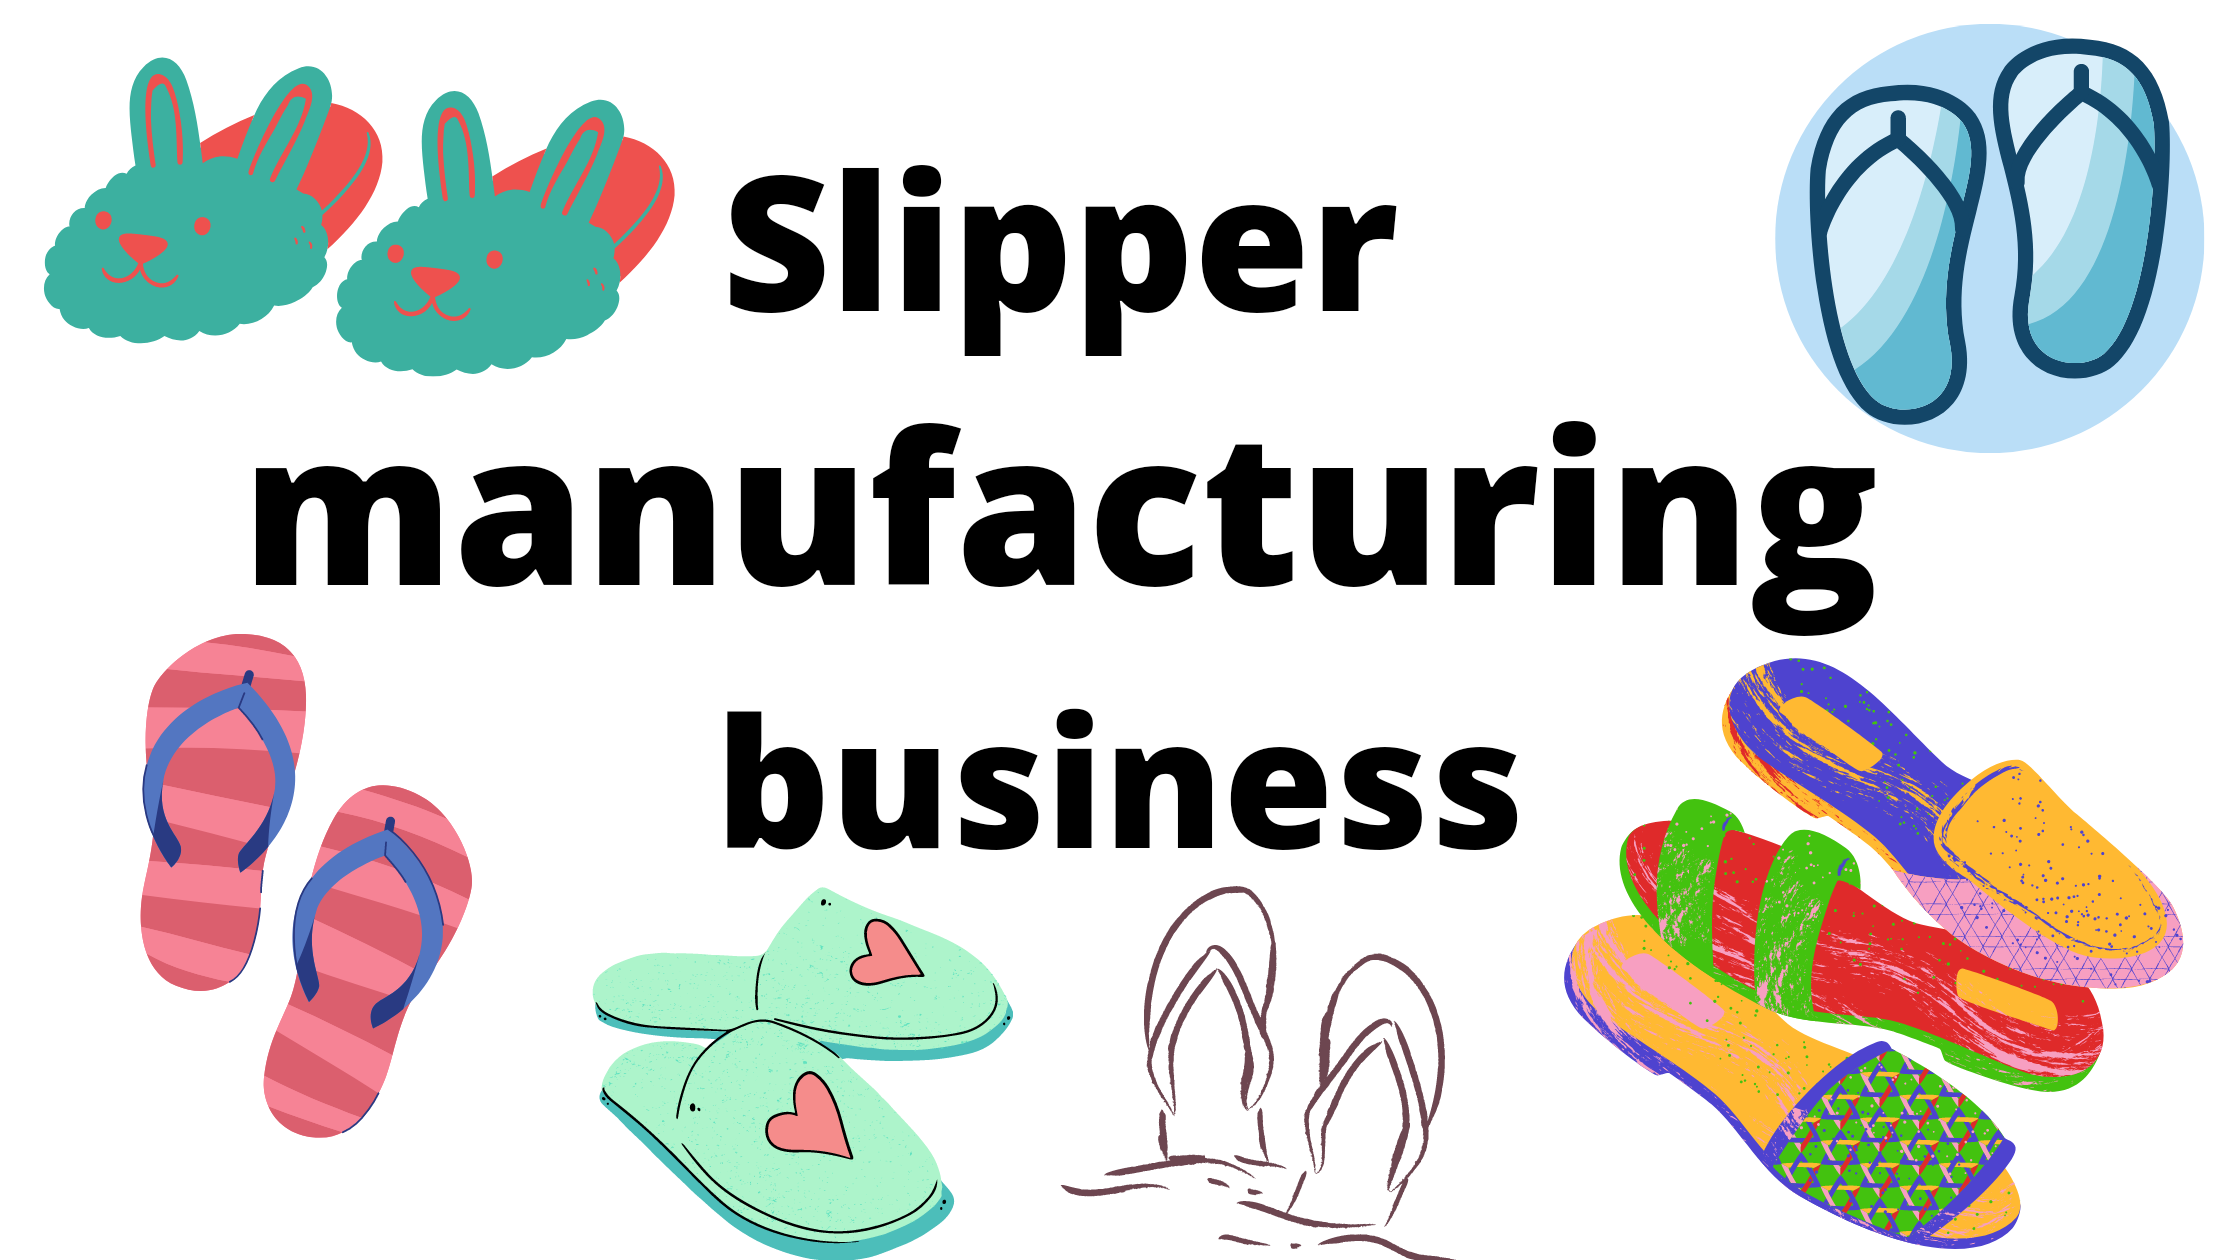 slipper manufacturing